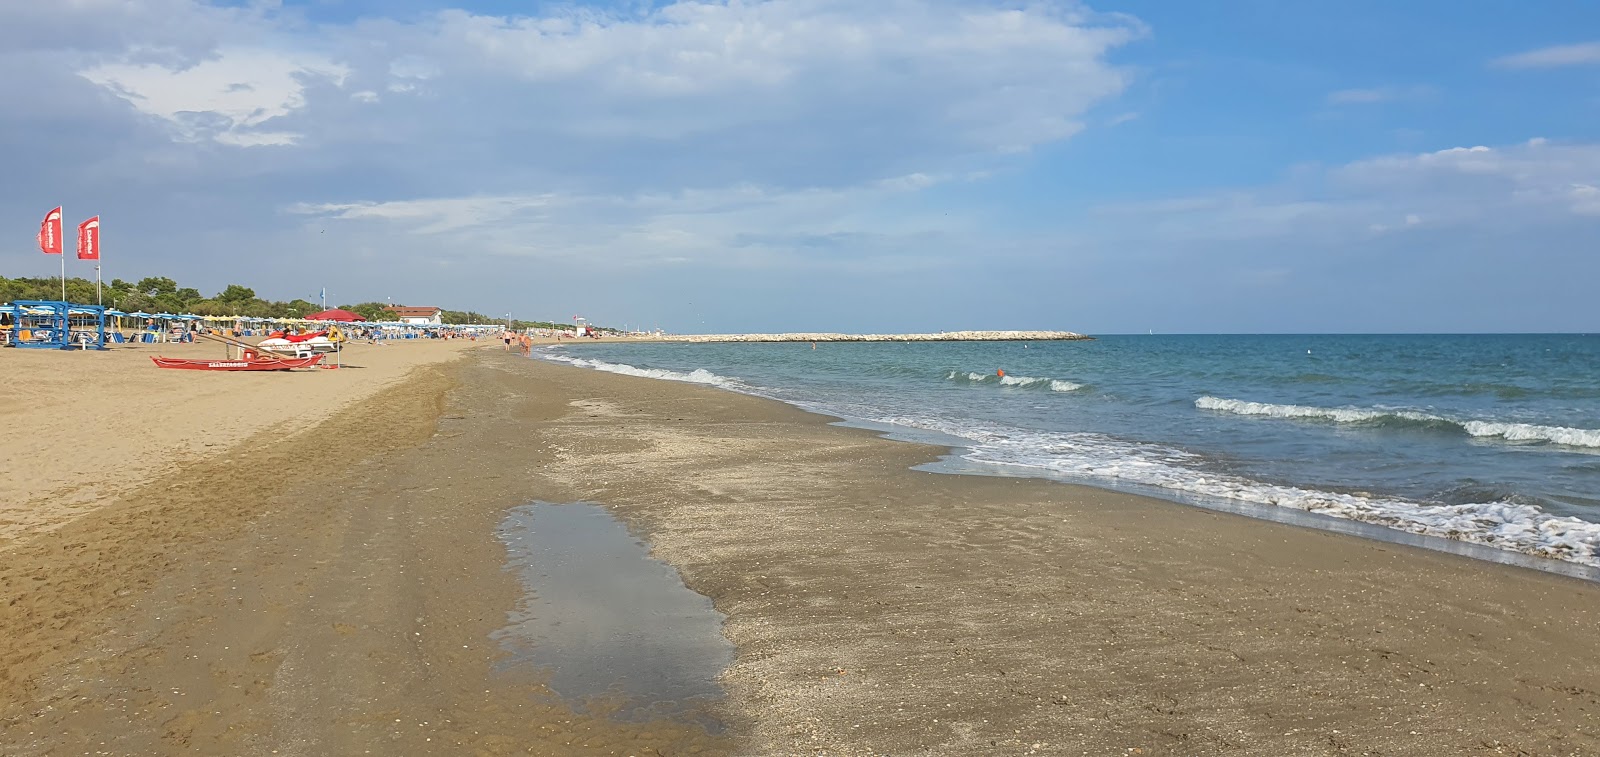 Foto de Spiaggia di Cavallino Treporti com areia brilhante superfície